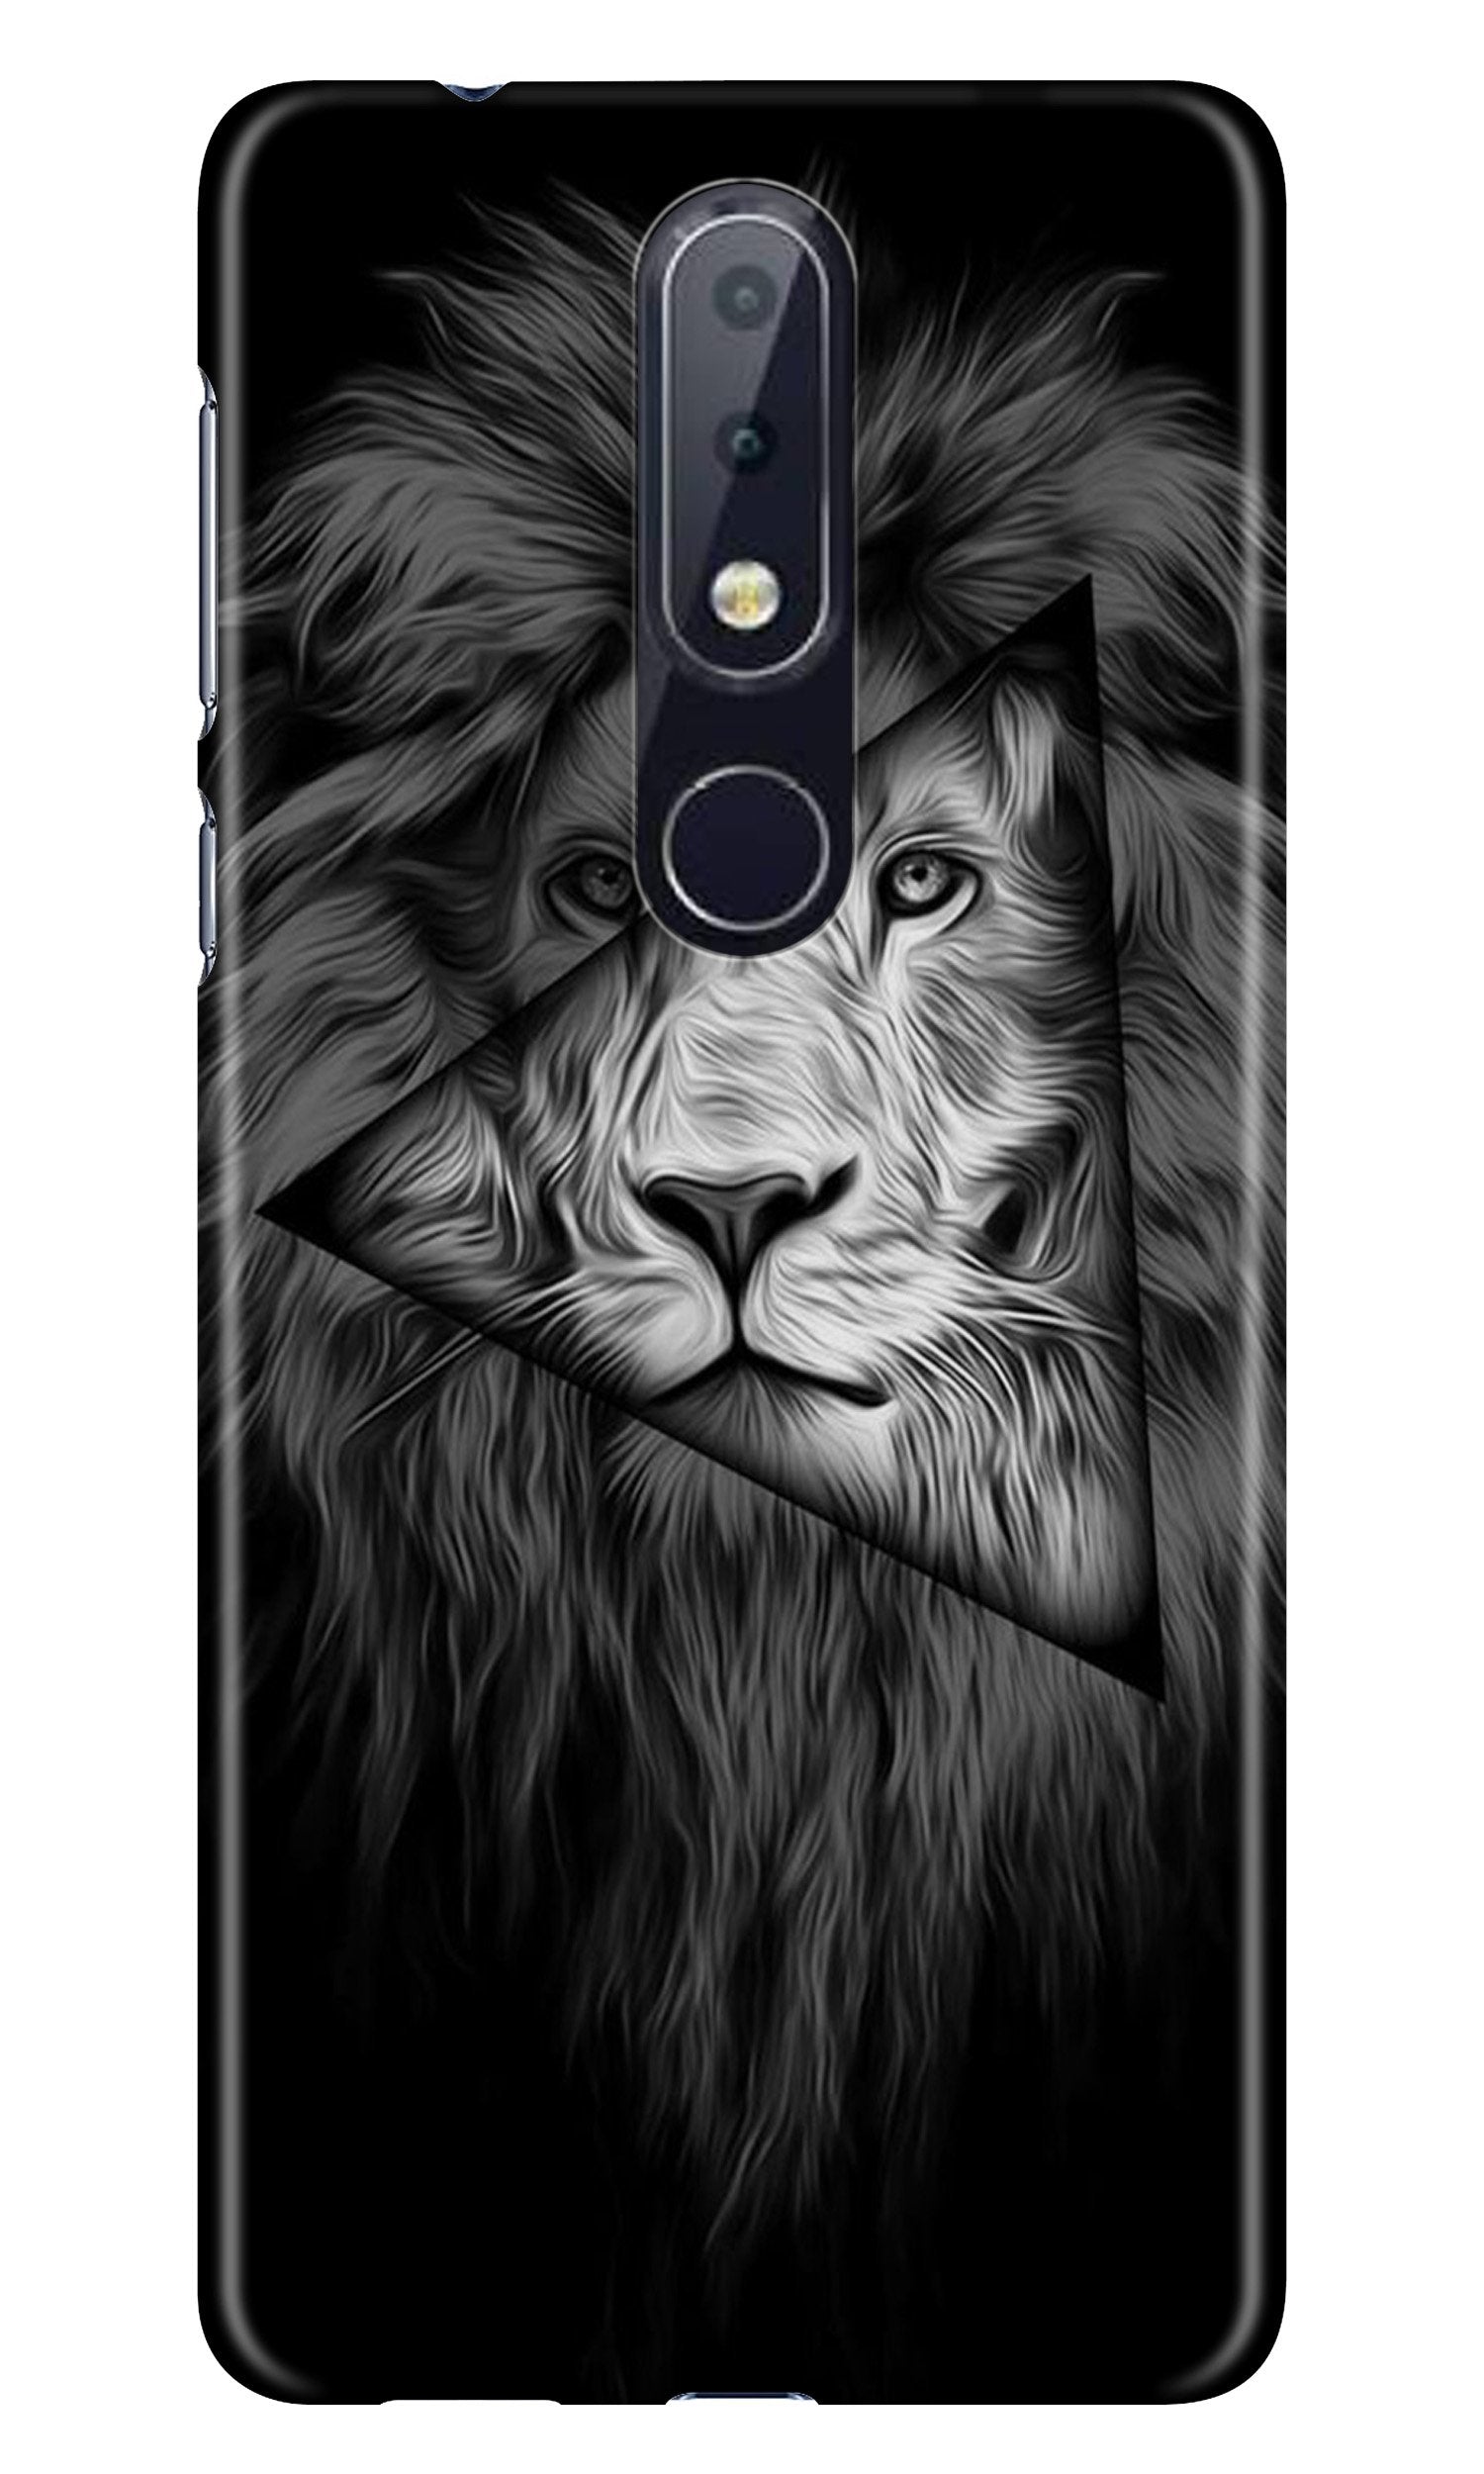 Lion Star Case for Nokia 4.2 (Design No. 226)